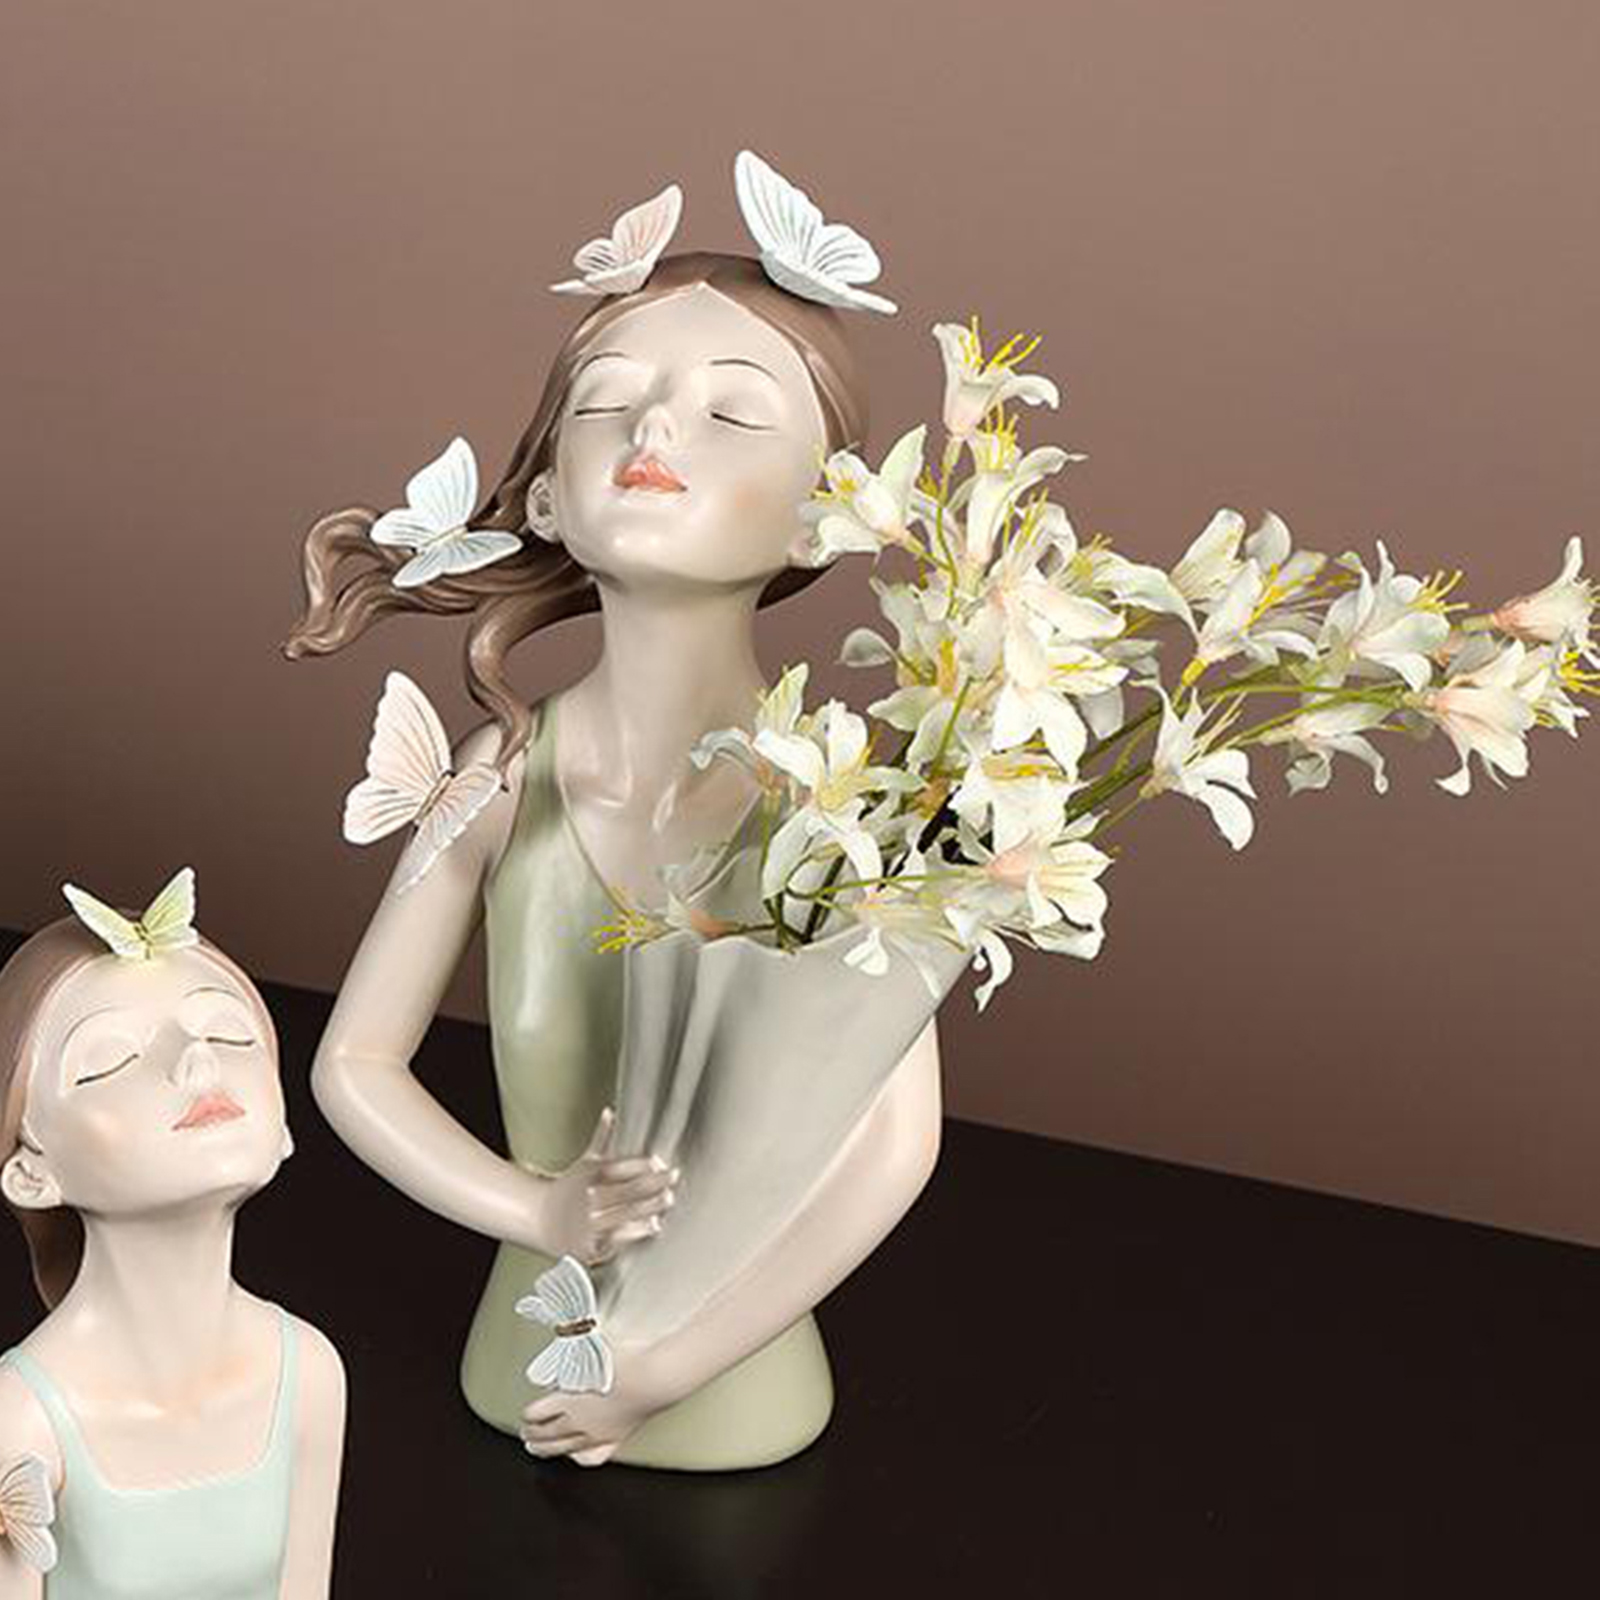 Bình hoa cô gái Tượng bình hoa cô gái Benzaiten bằng nhựa Plastic cao cấp nhiều kiểu dáng, giá siêu rẻ - F20Beauty - Phong cách hiện đại